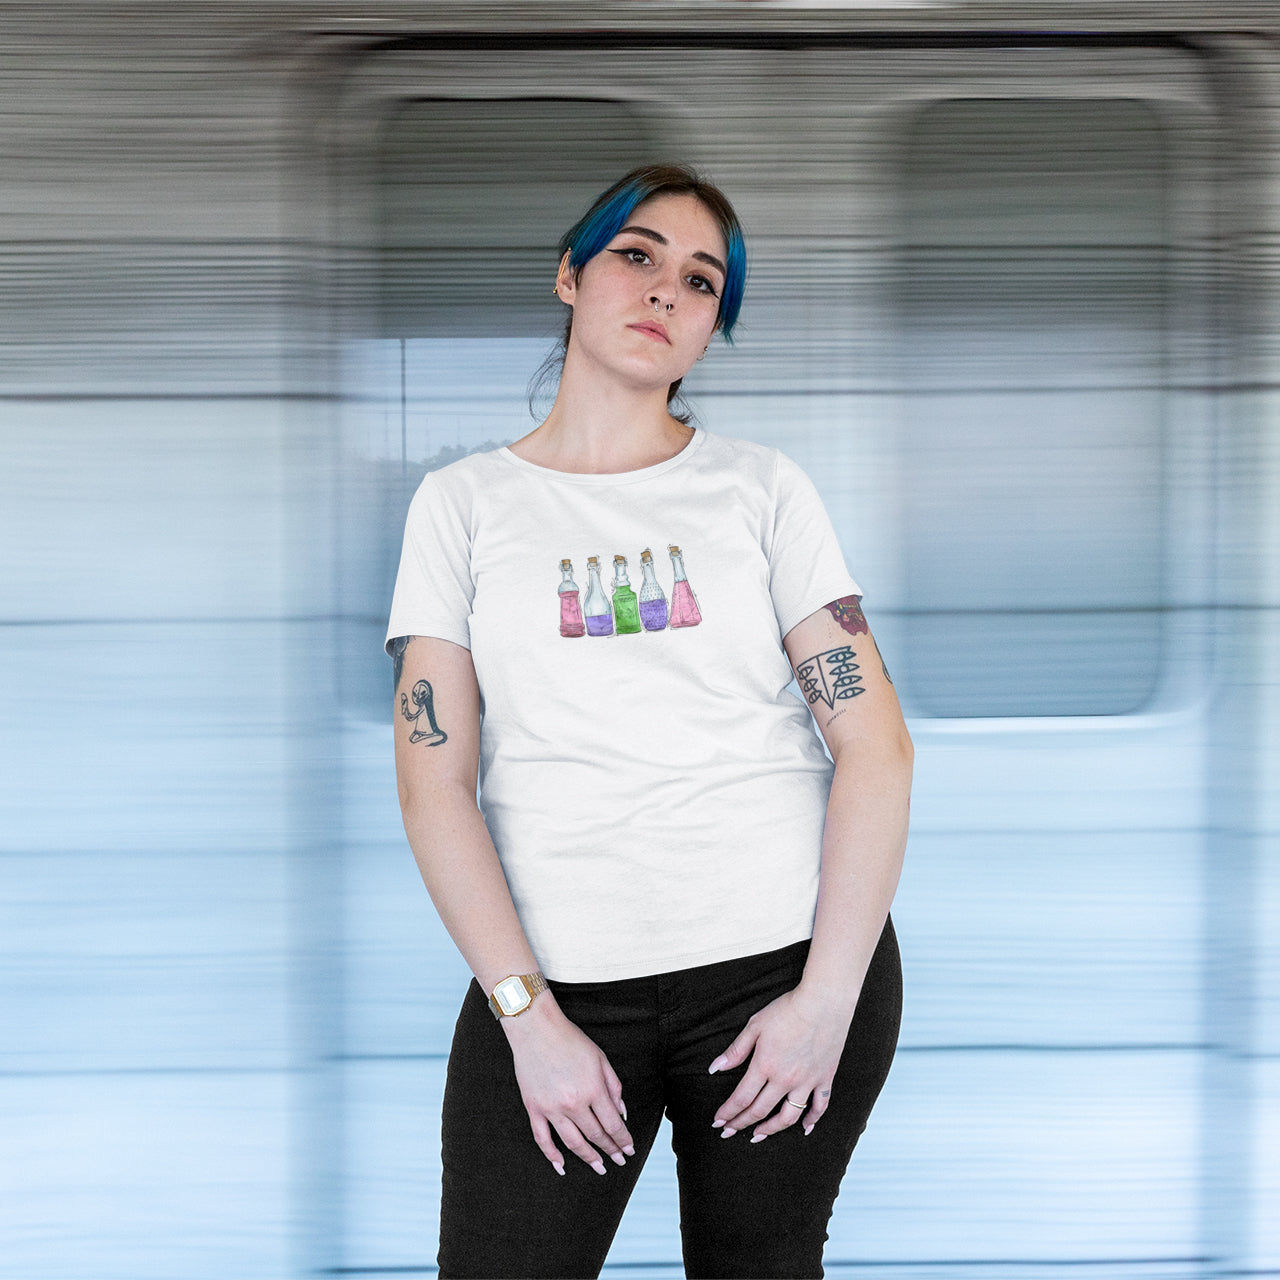 Trigender Pride Potion Bottles - Unisex T-Shirt